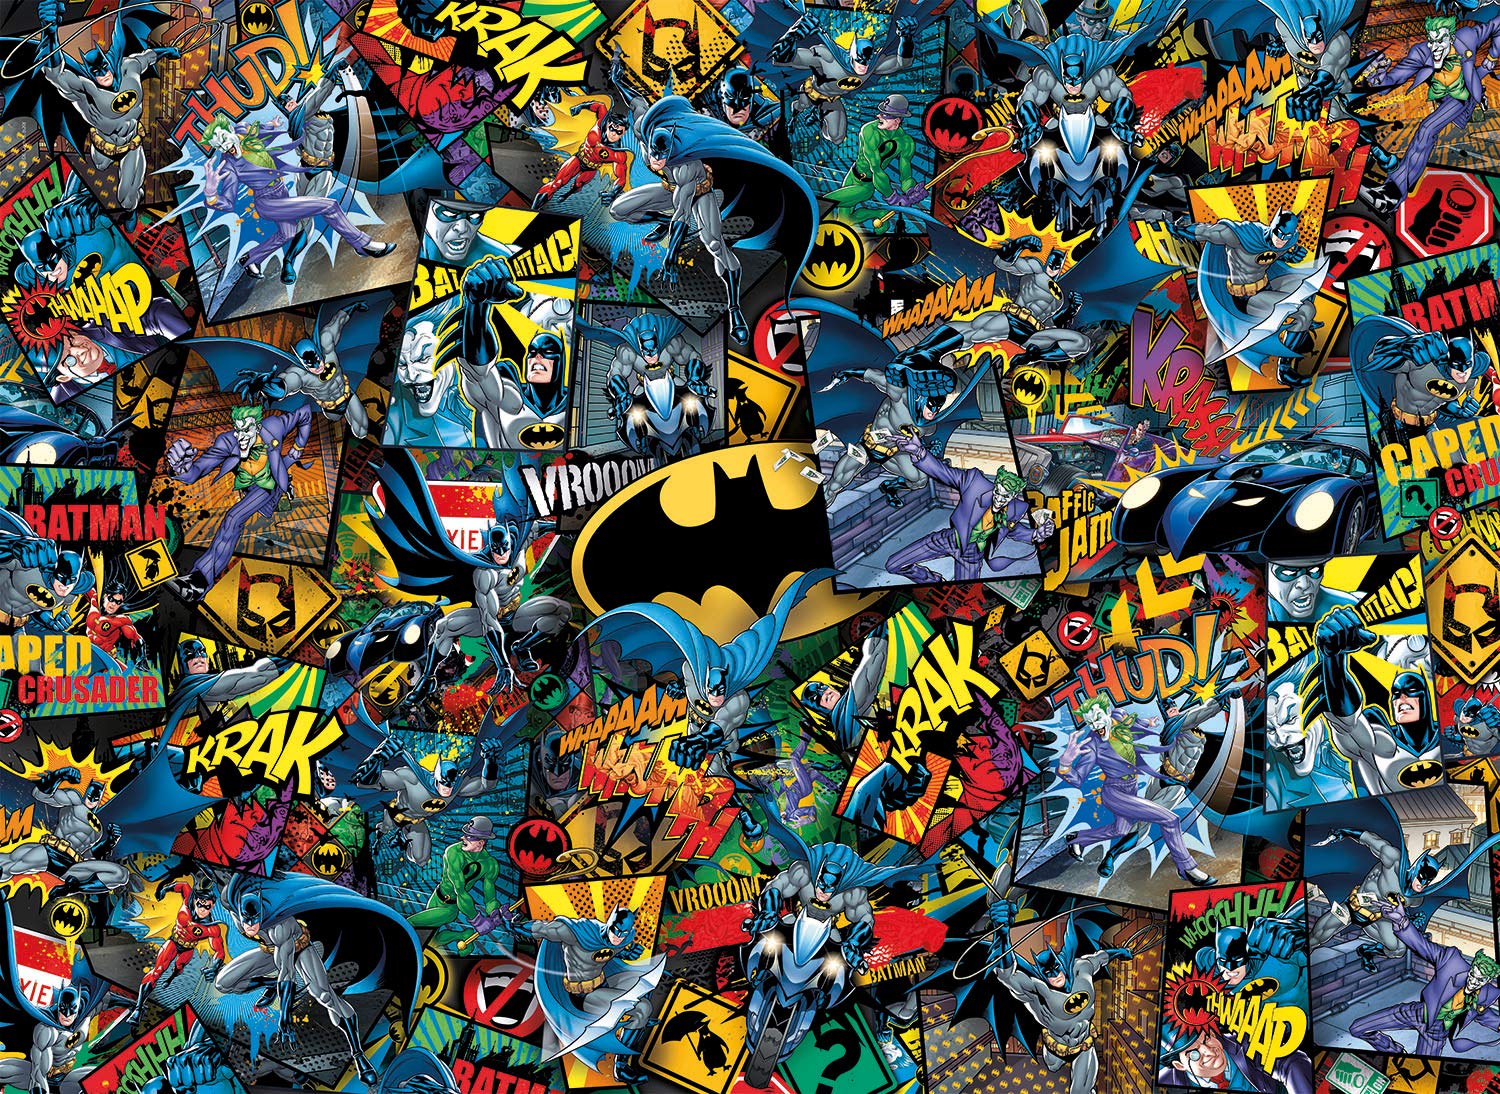 Clementoni - 39575 - Impossible - Batman - 1000 pieces - Puzzle